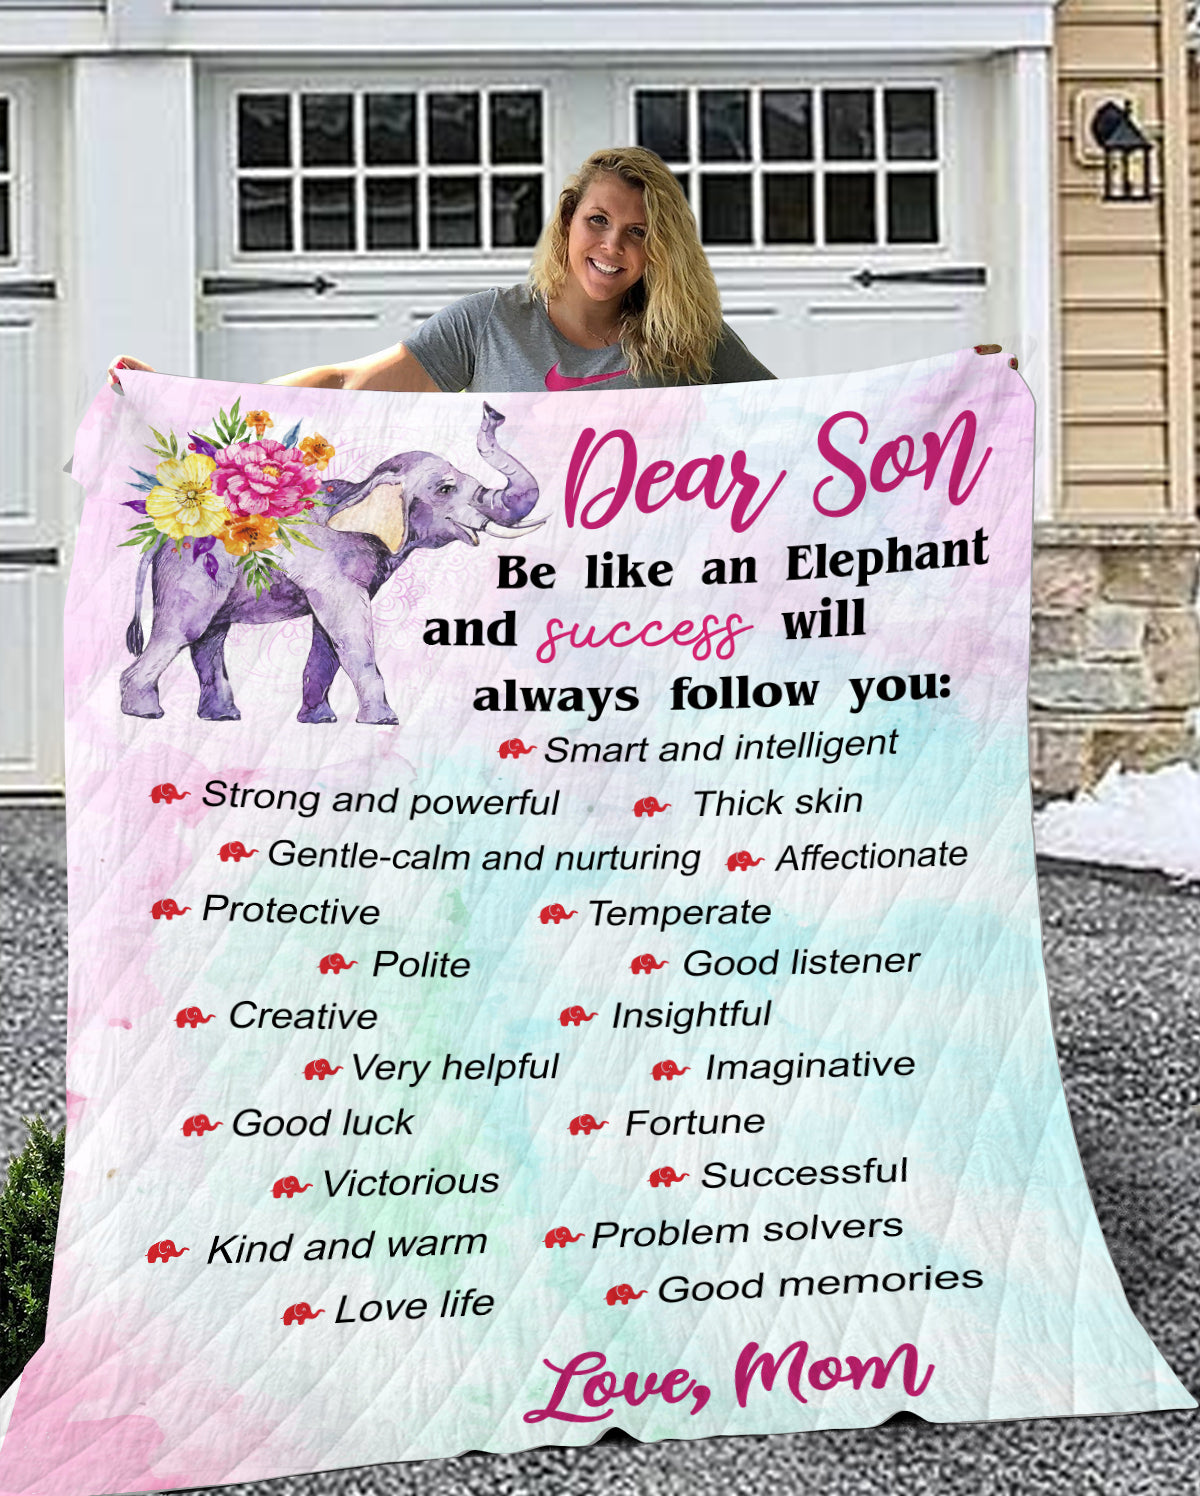 Be like an Elephant Velveteen Plush Blanket (Son from Mom)